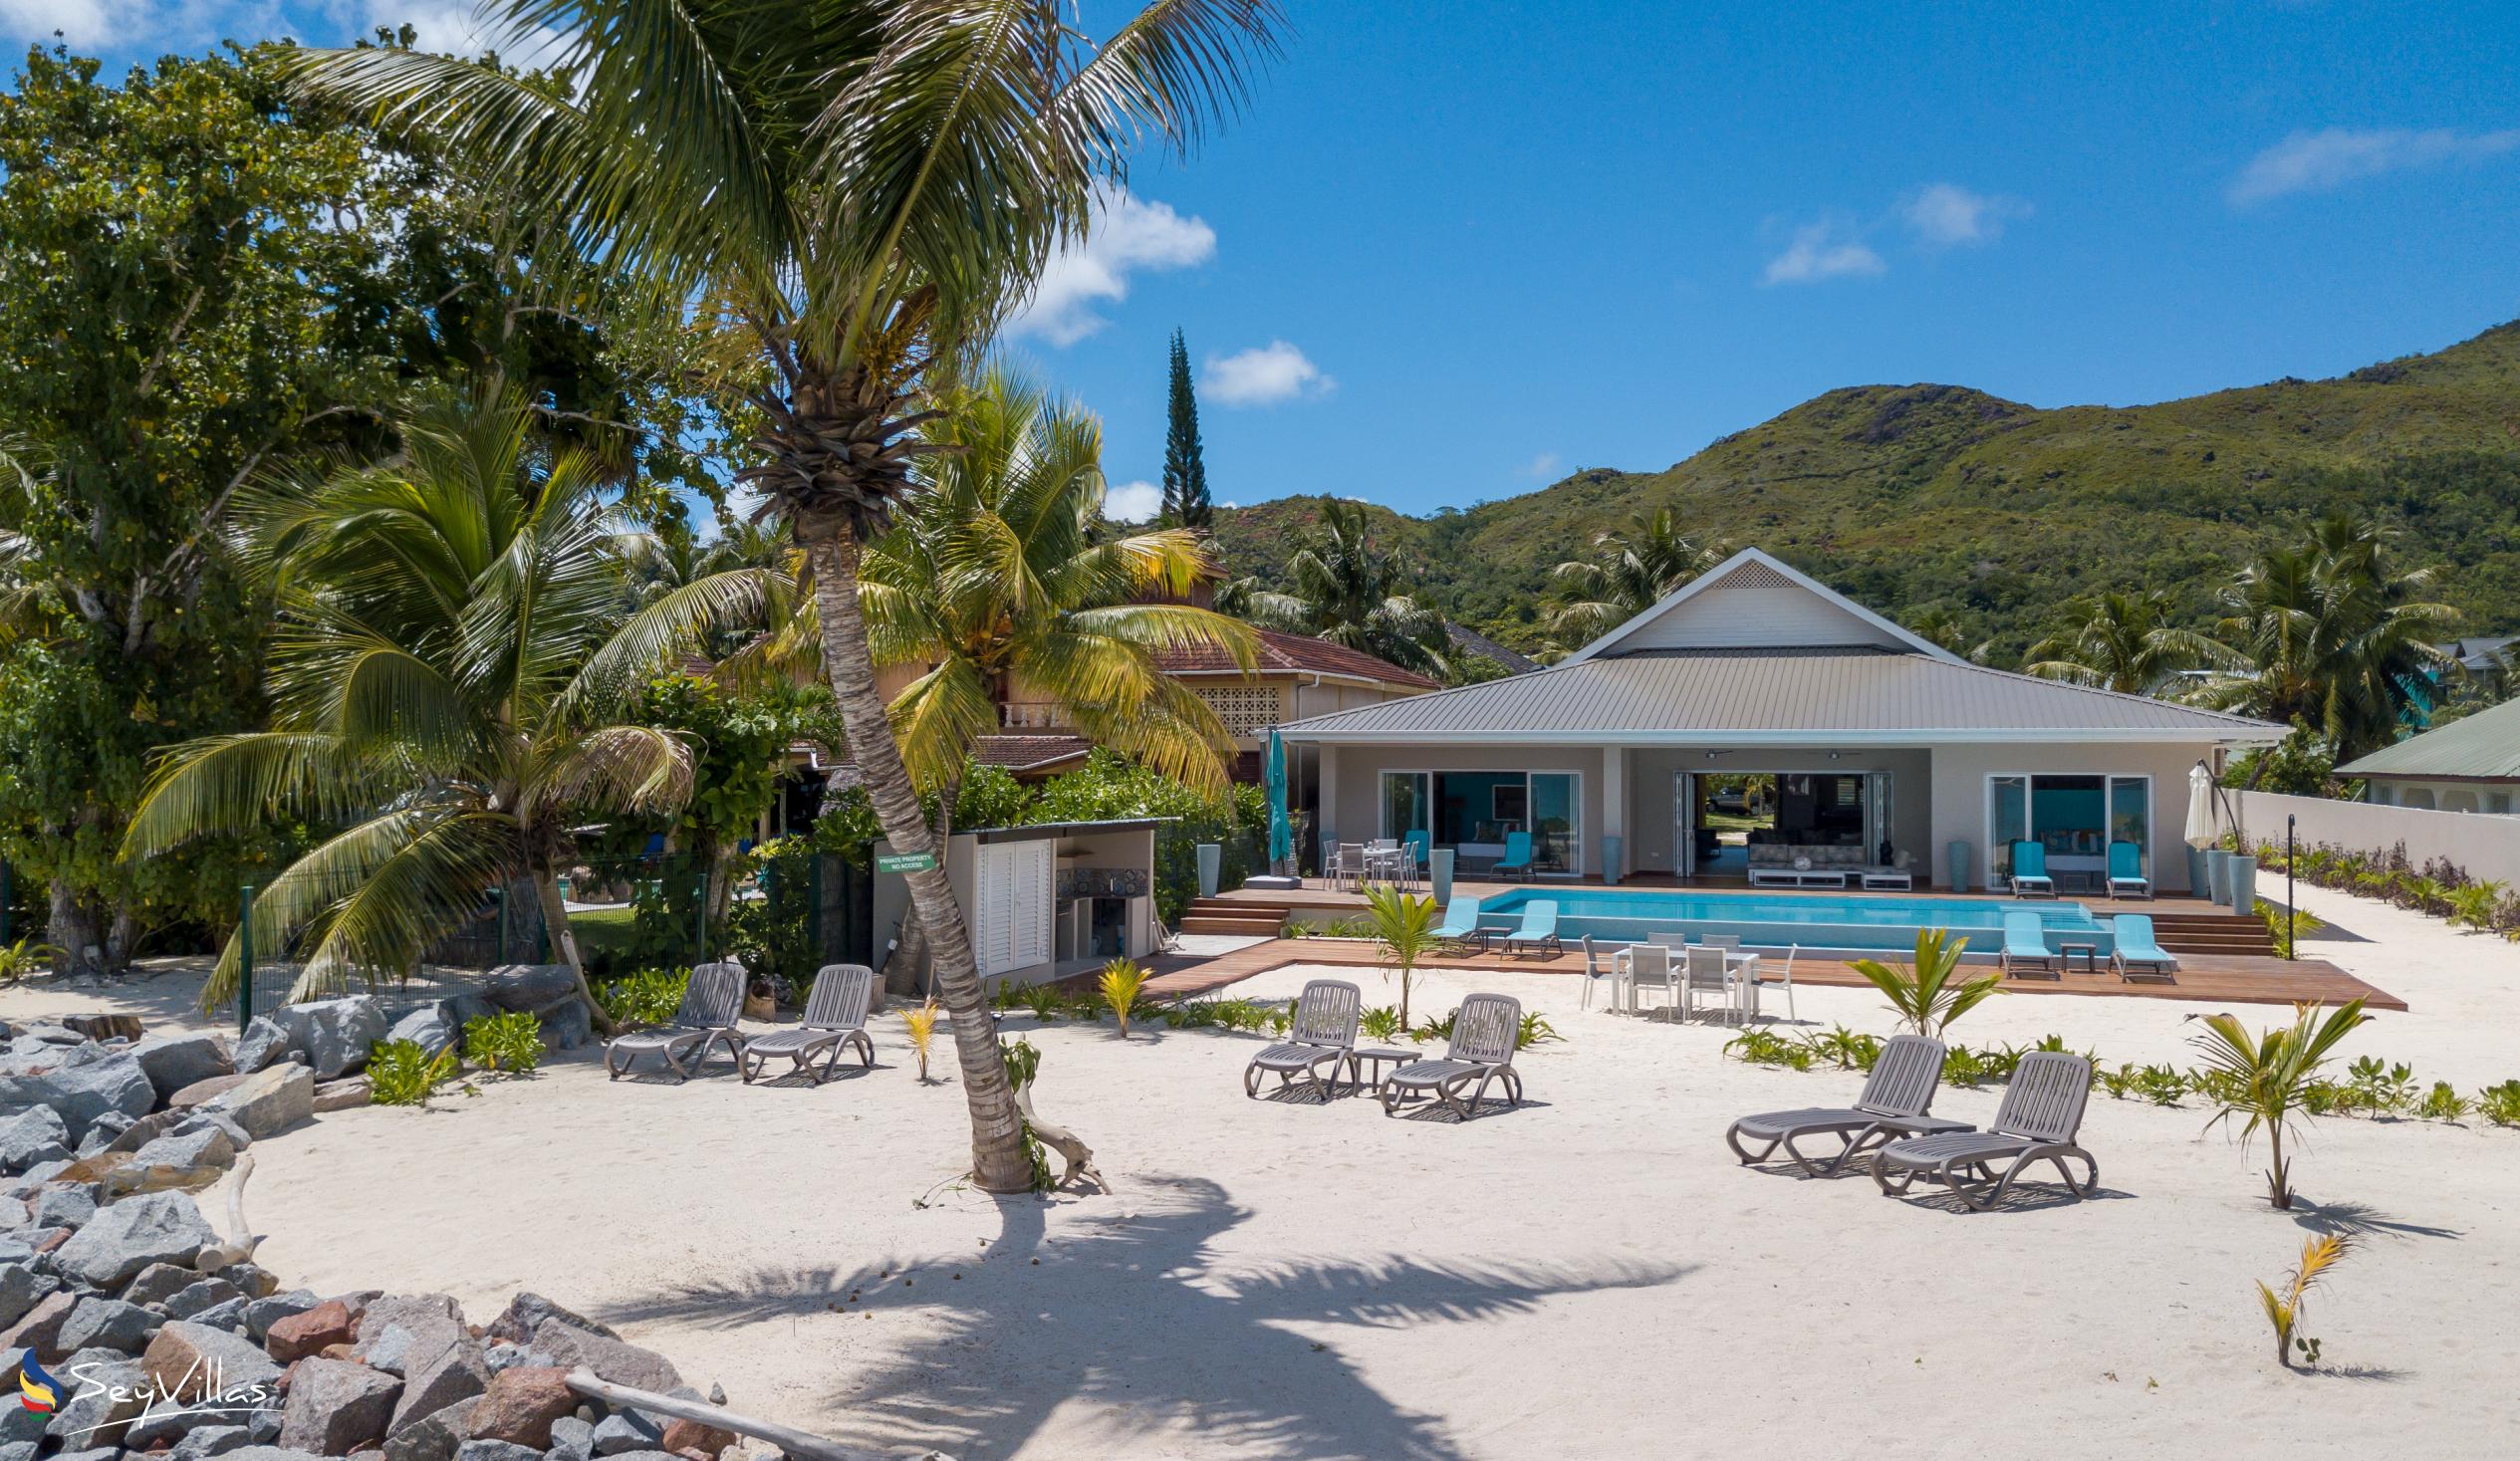 Foto 10: Villas Coco Beach - Aussenbereich - Praslin (Seychellen)